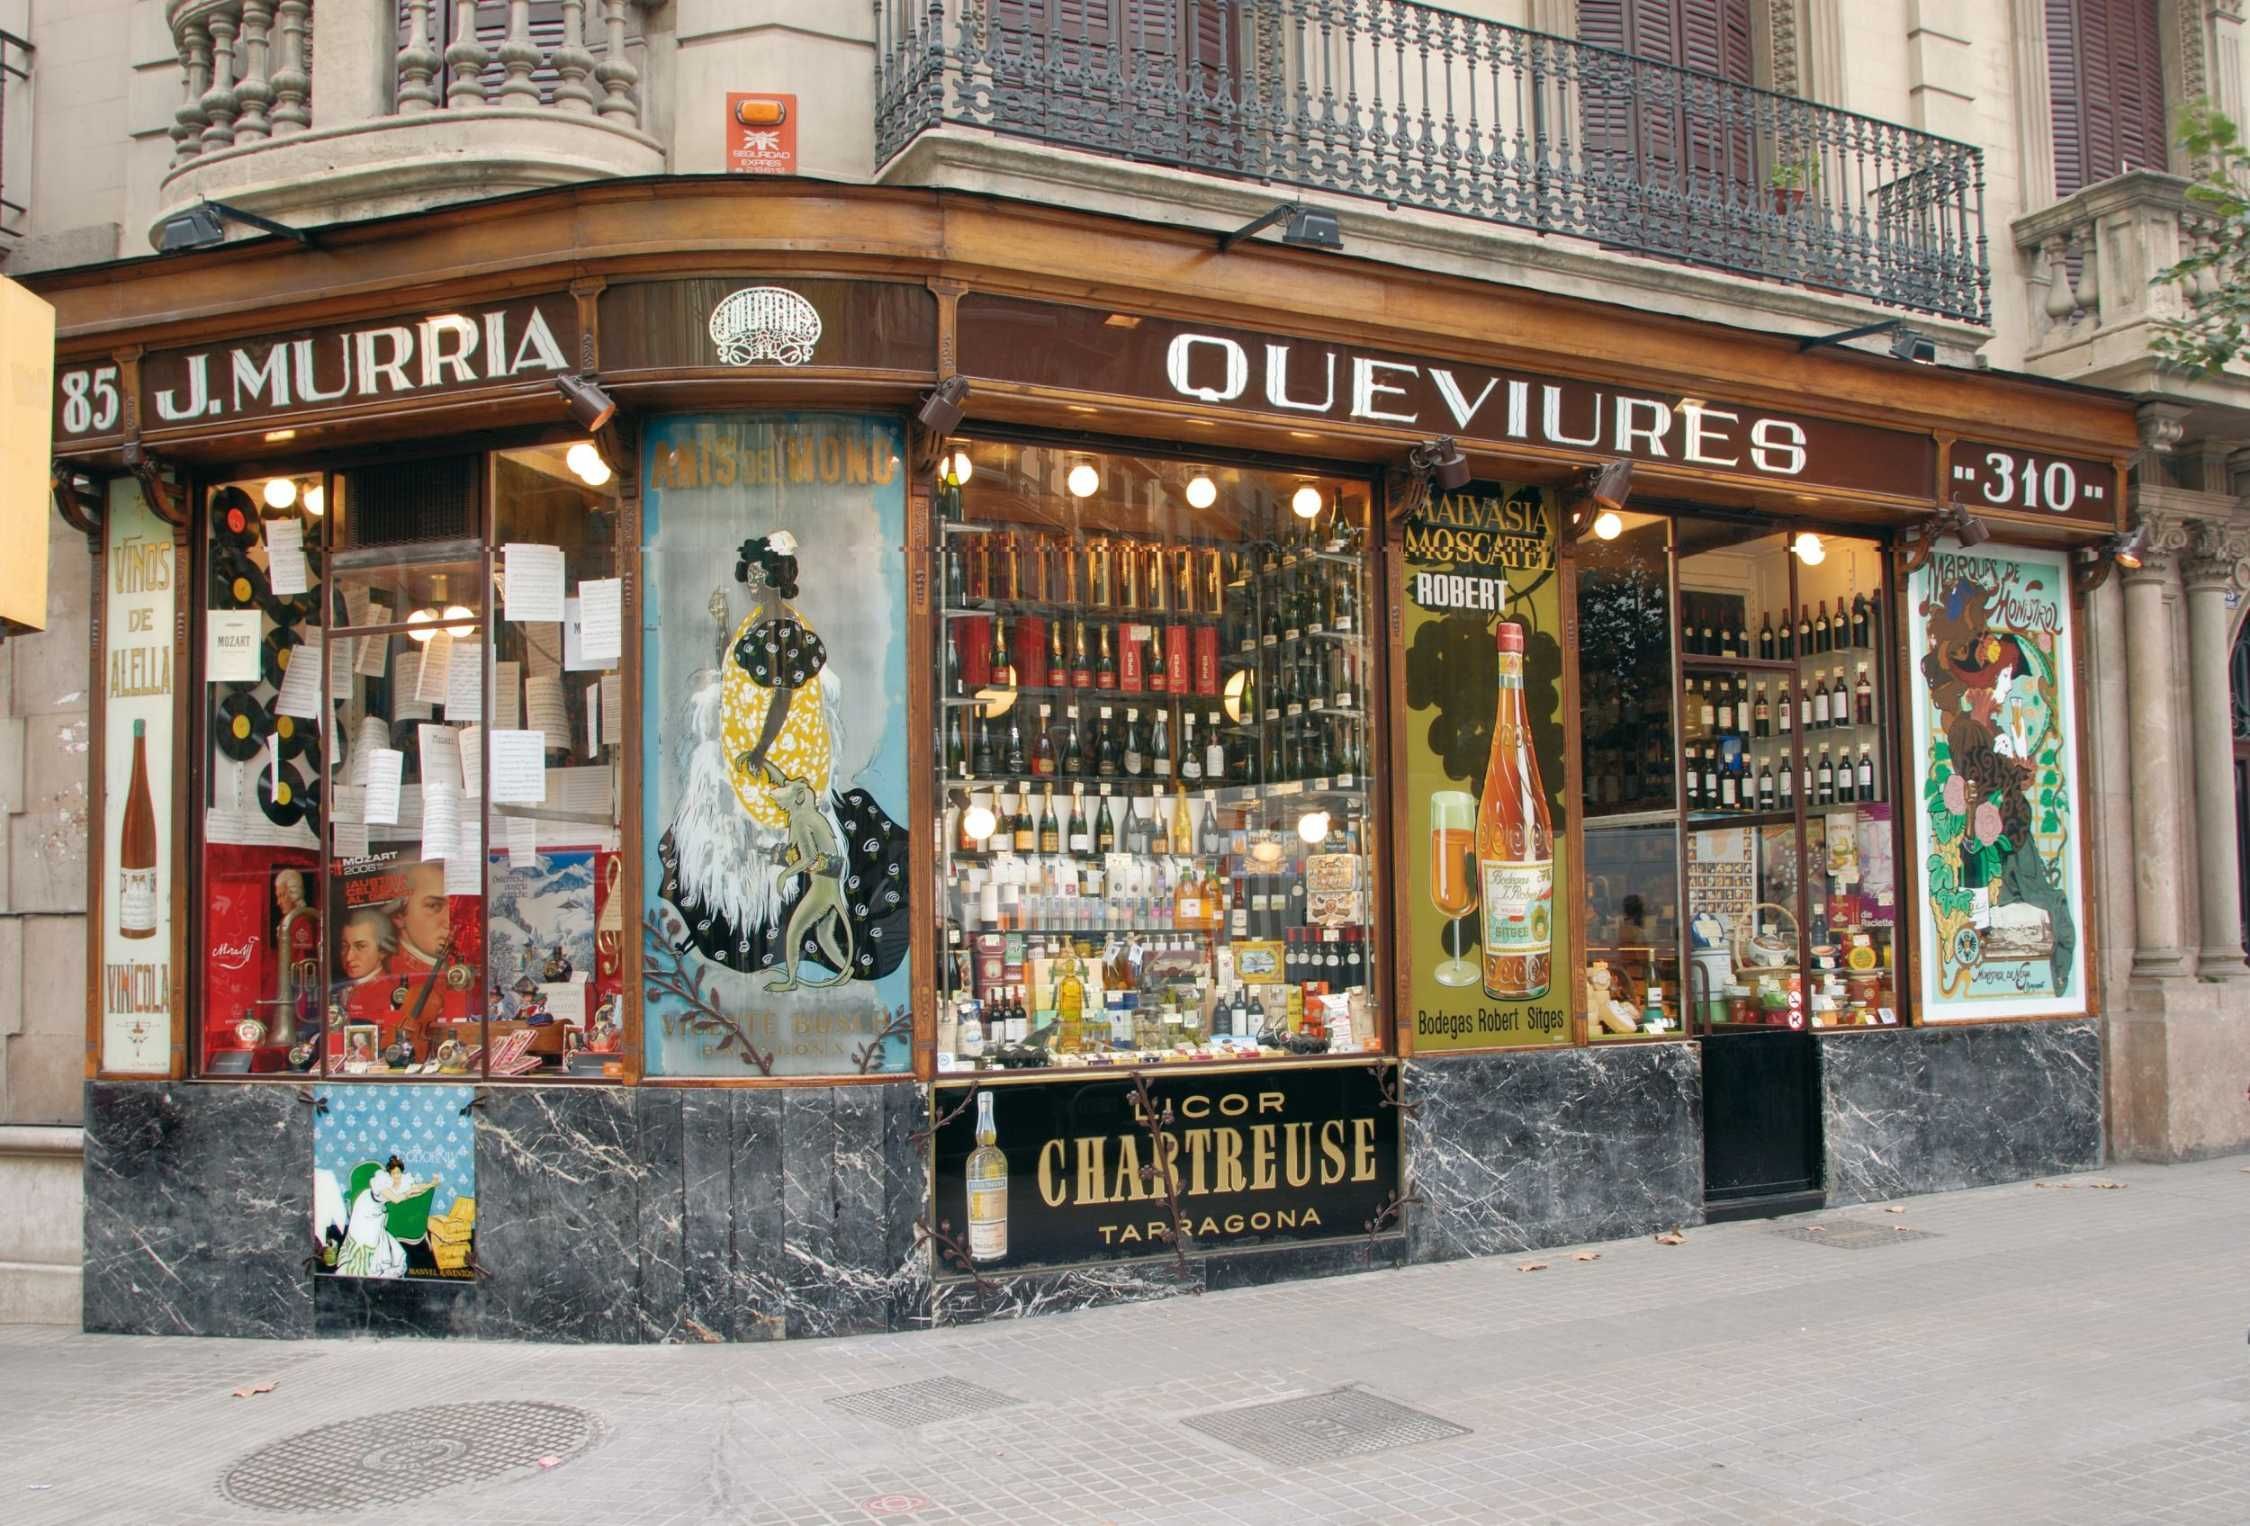 Una centenaria tienda barcelonesa echa turistas curiosos avisándolos de que les hará pagar entrada